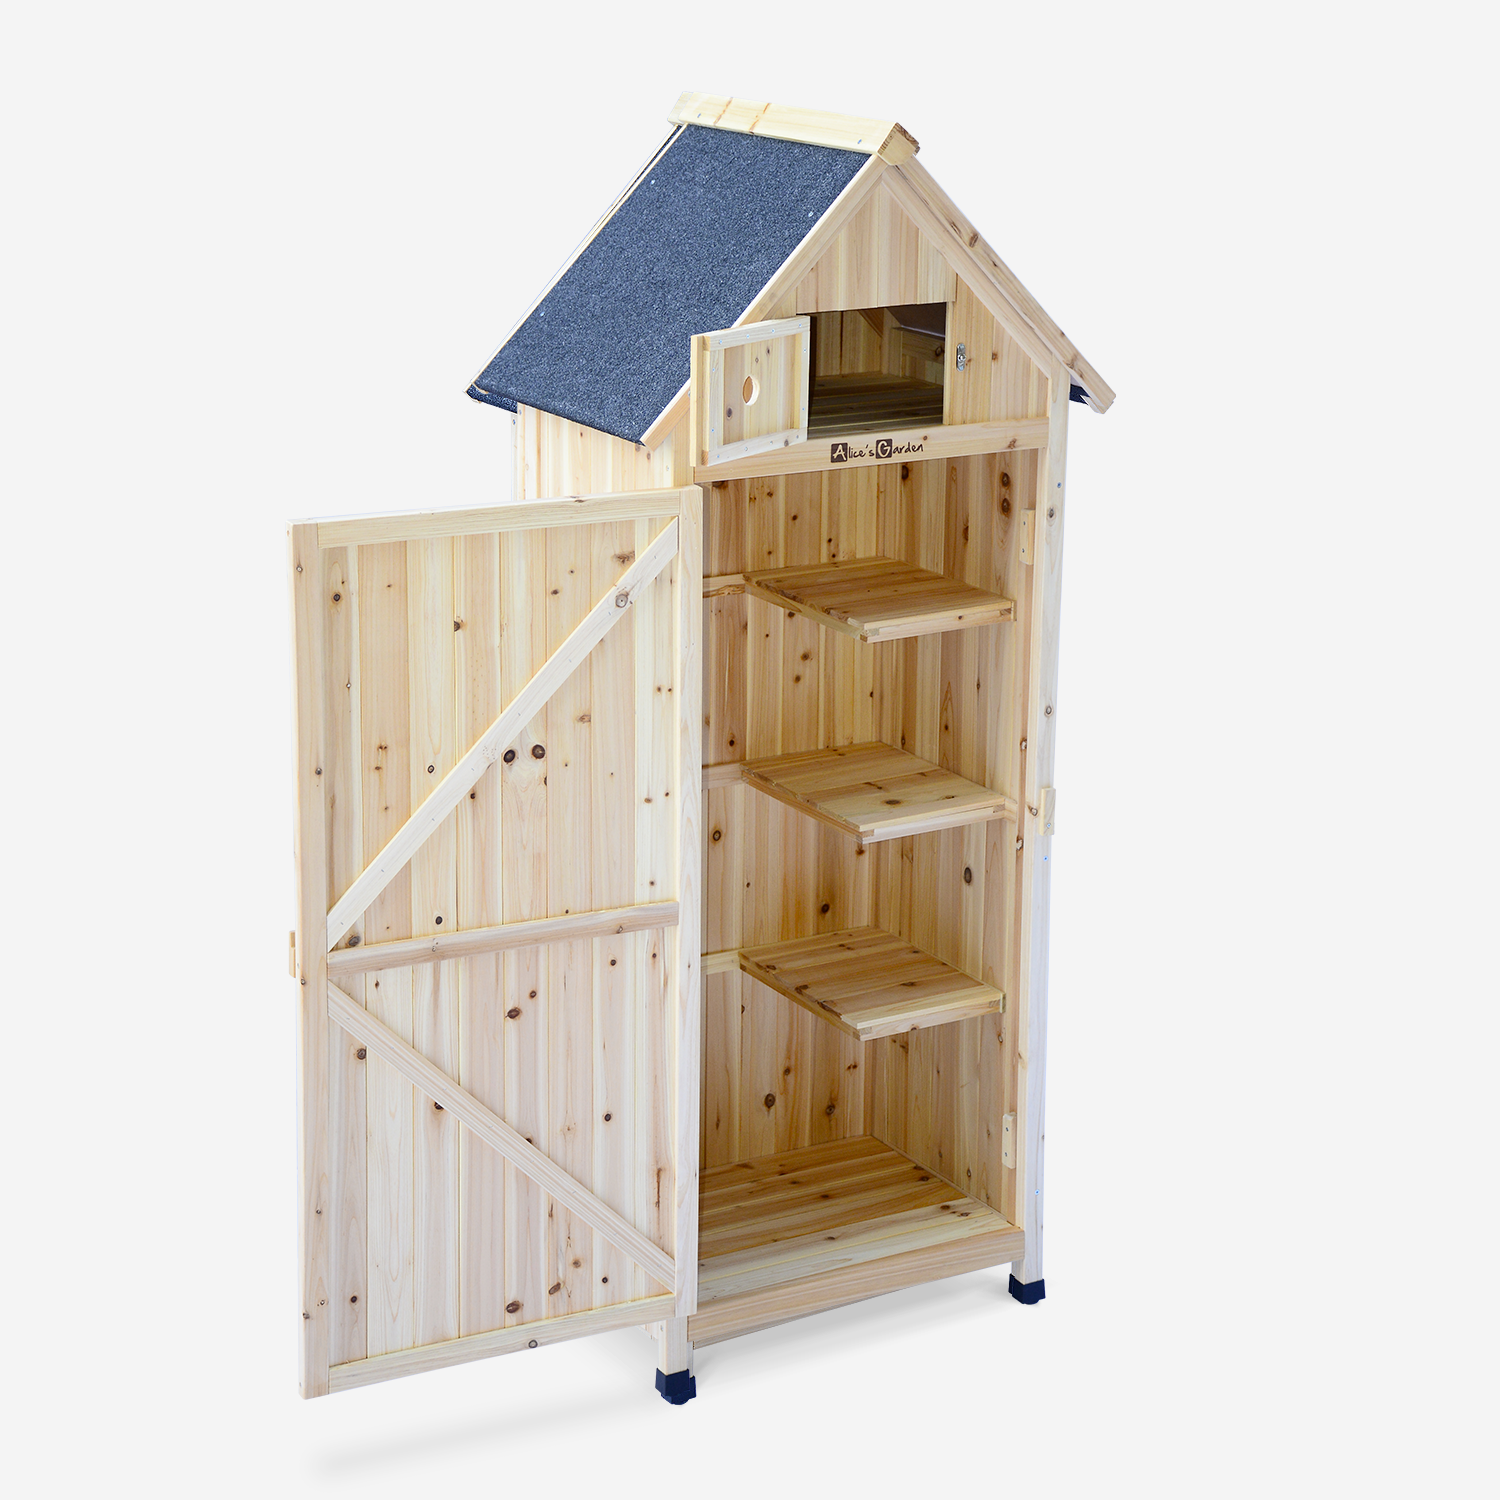 Wooden garden cabinet - 77x54.5x179 cm - Garden shed, storage cupboard, tool storage - Mimosa - Natural Photo2